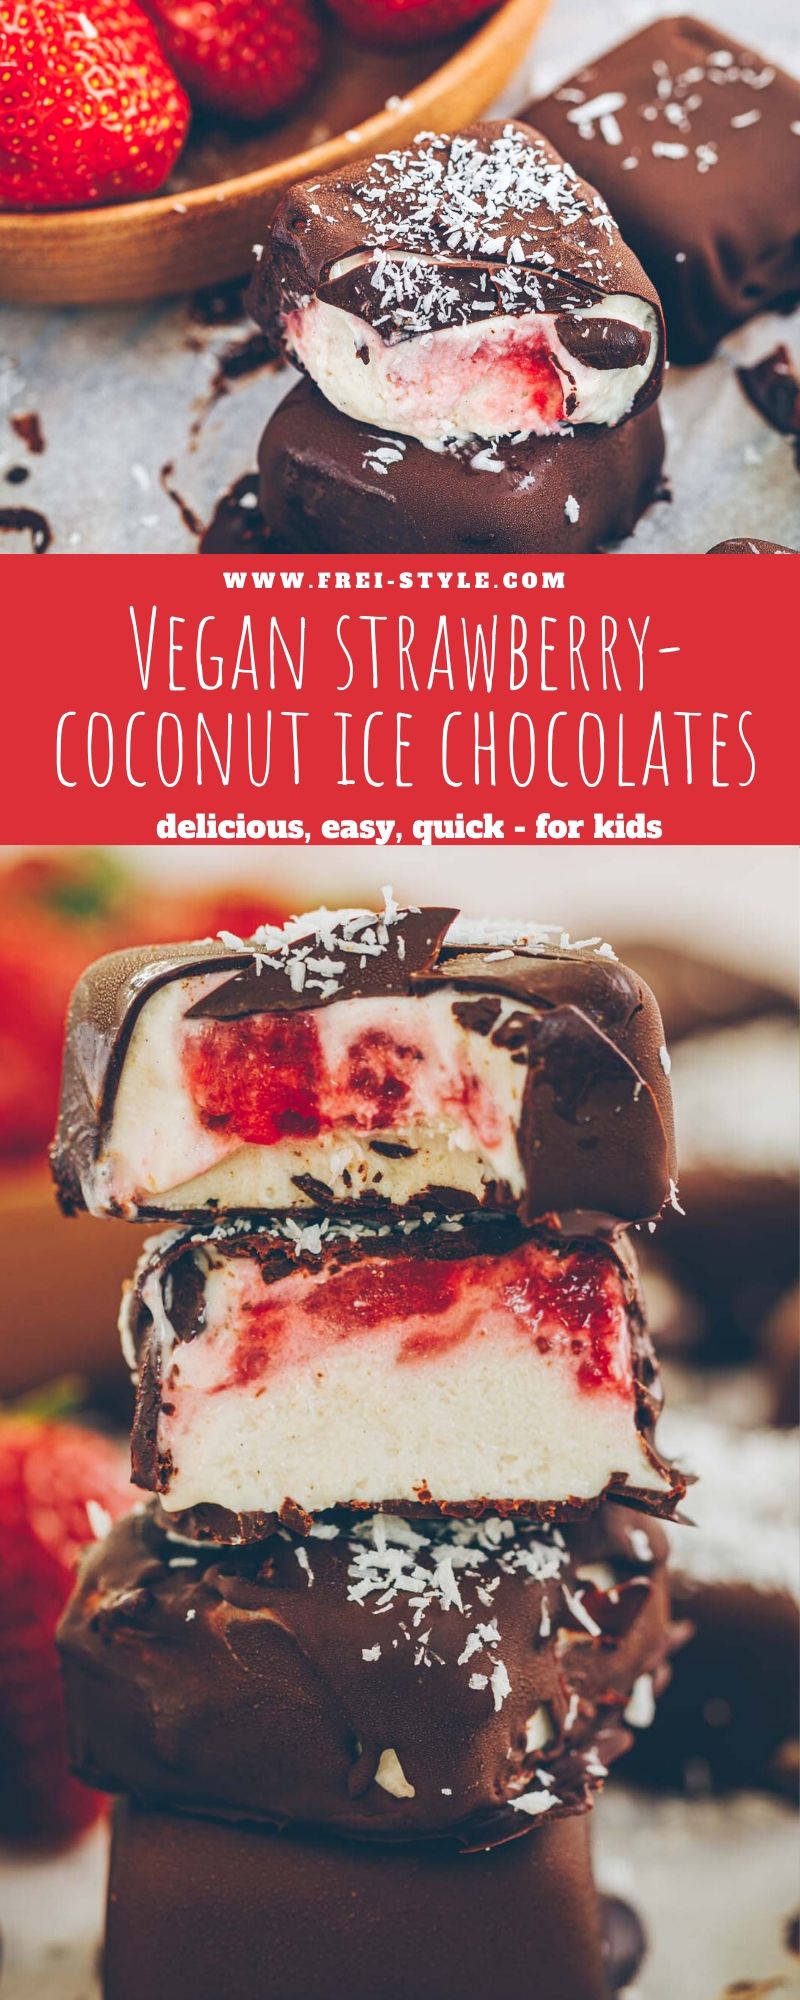 vegan strawberry-coconut ice chocolates